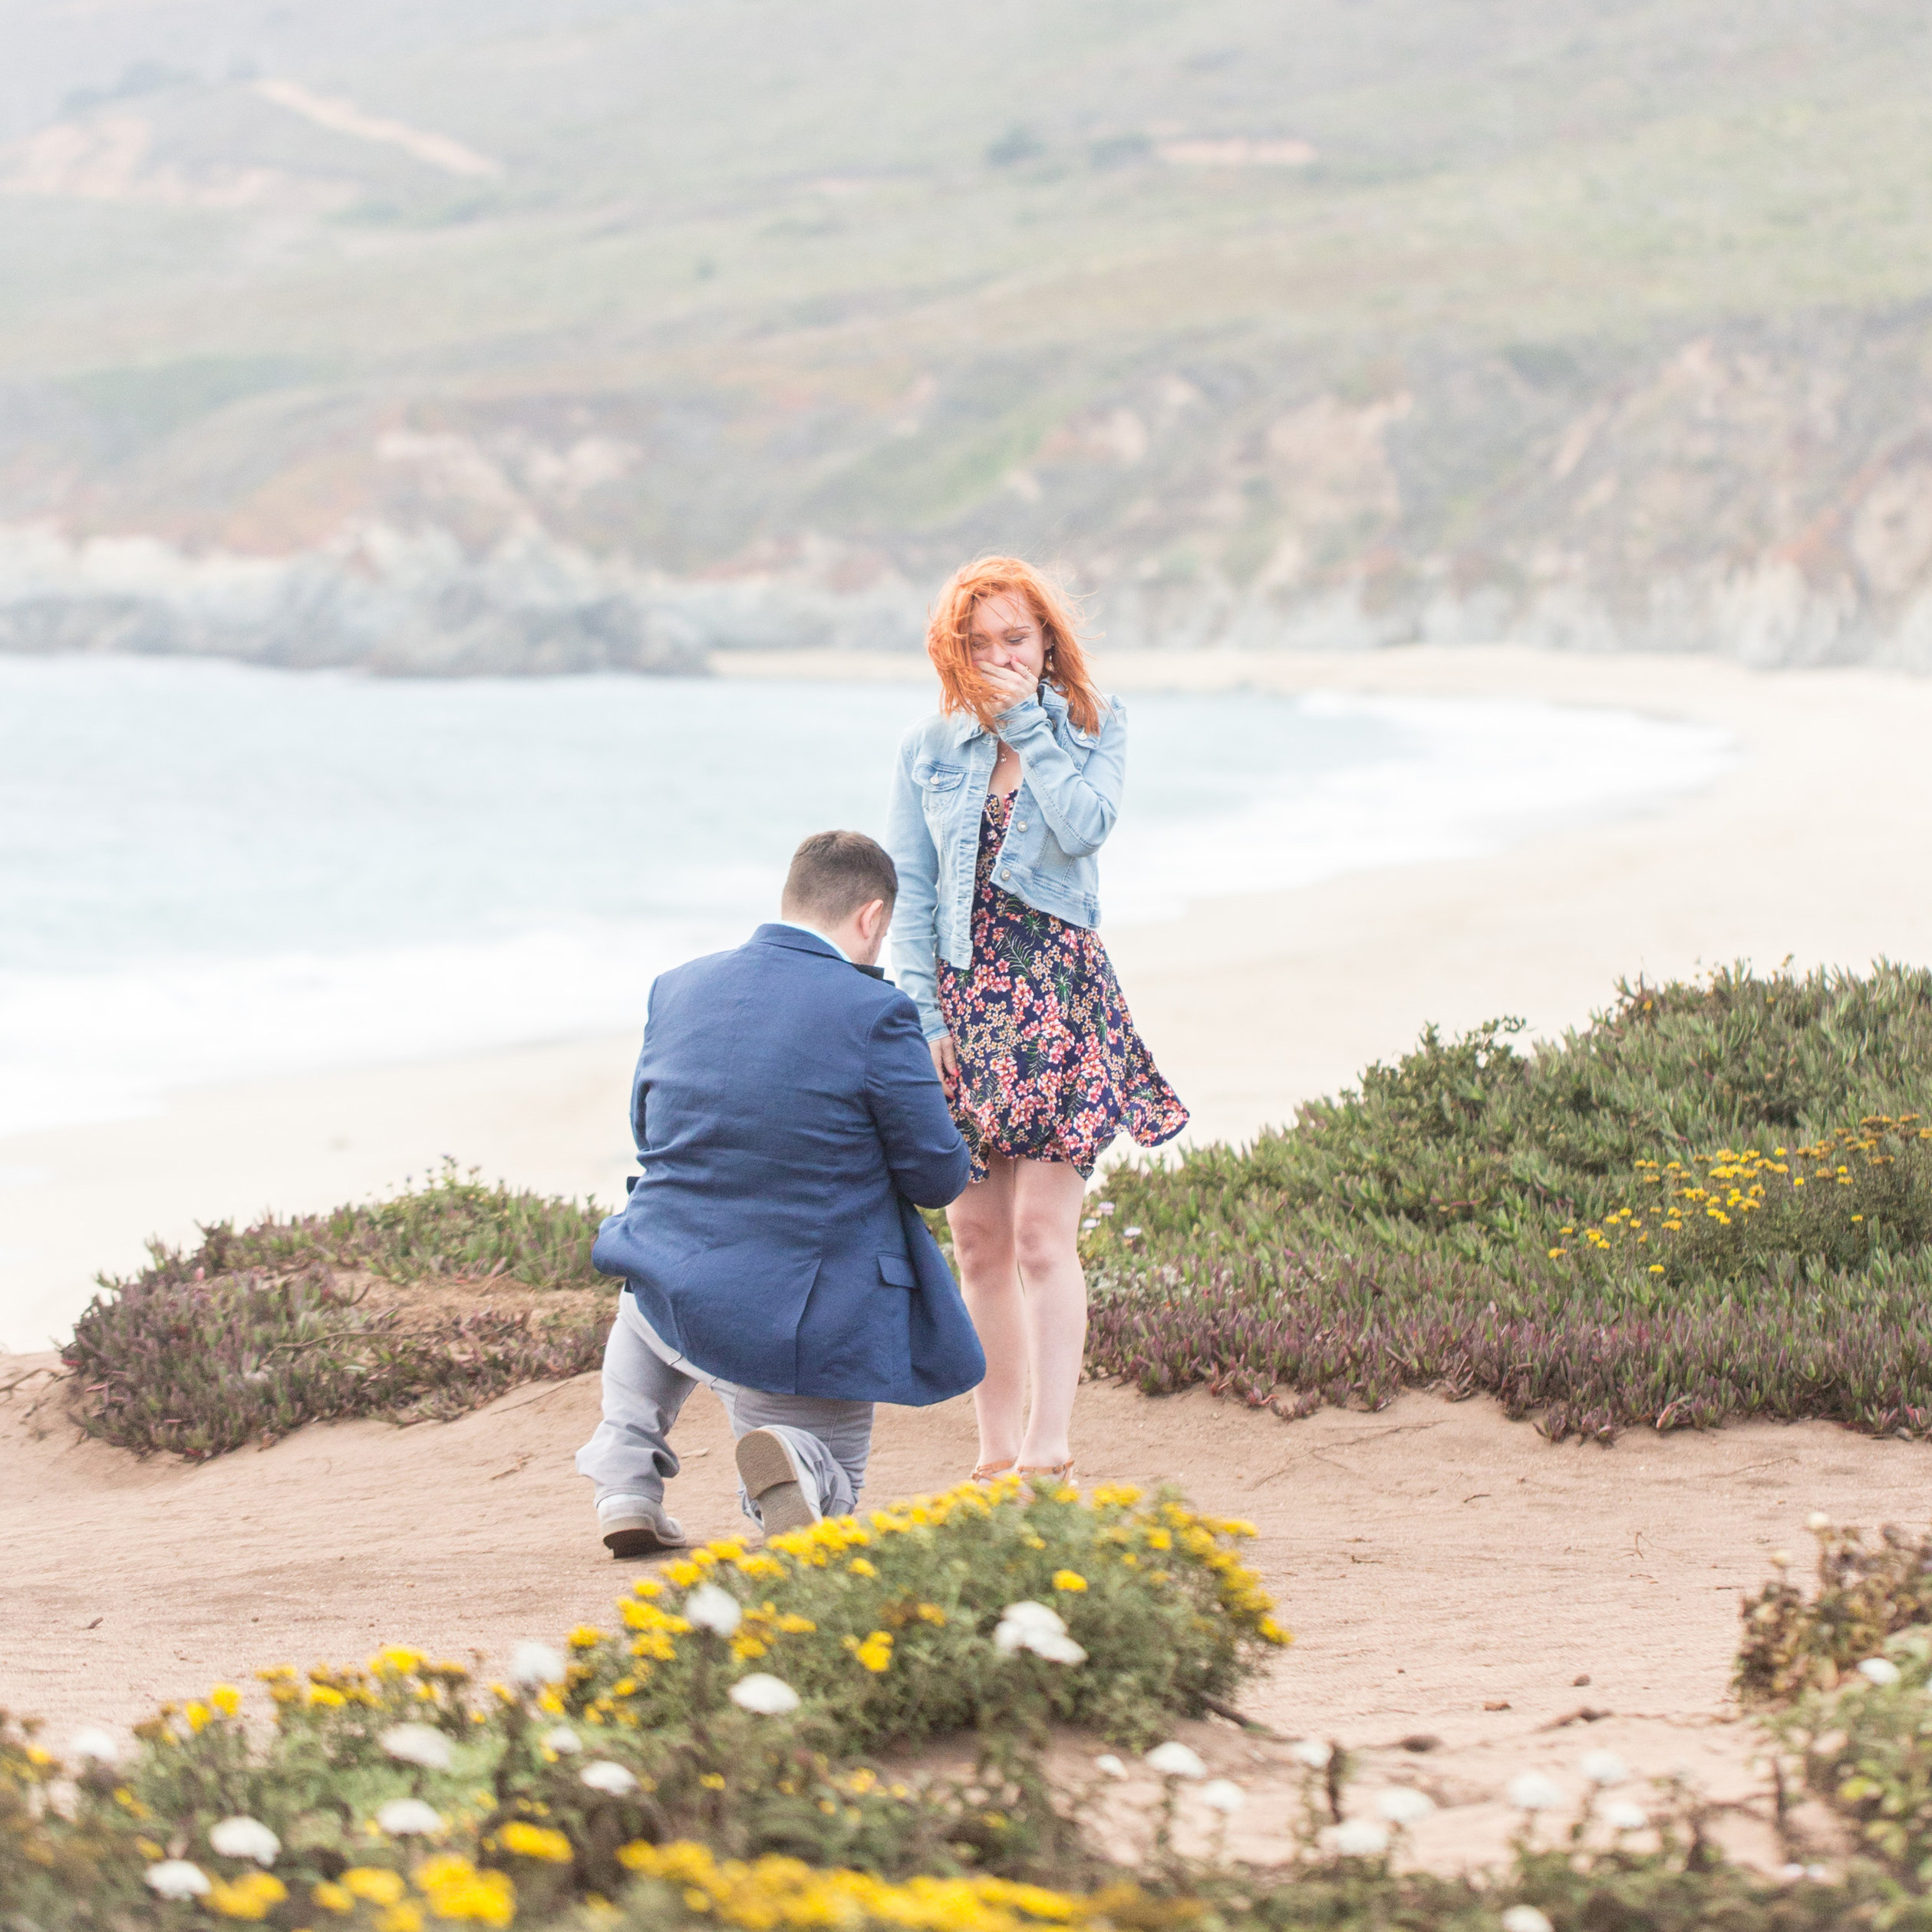 Big Sur Proposal Photographer | South Carolina Wedding Photographer | Laura & Rachel Photography